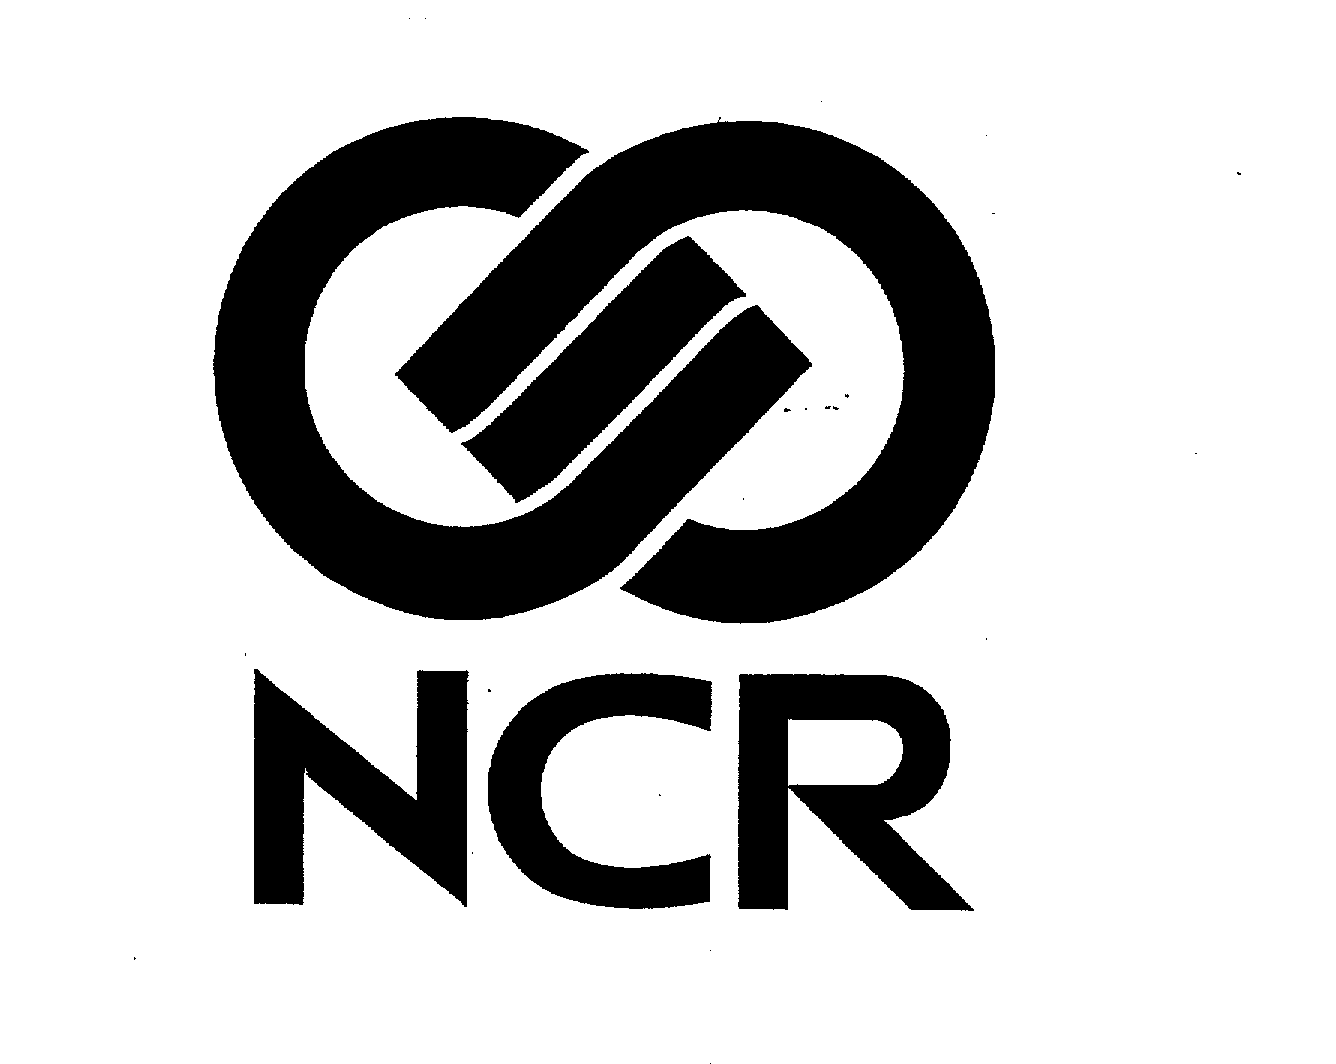 NCR